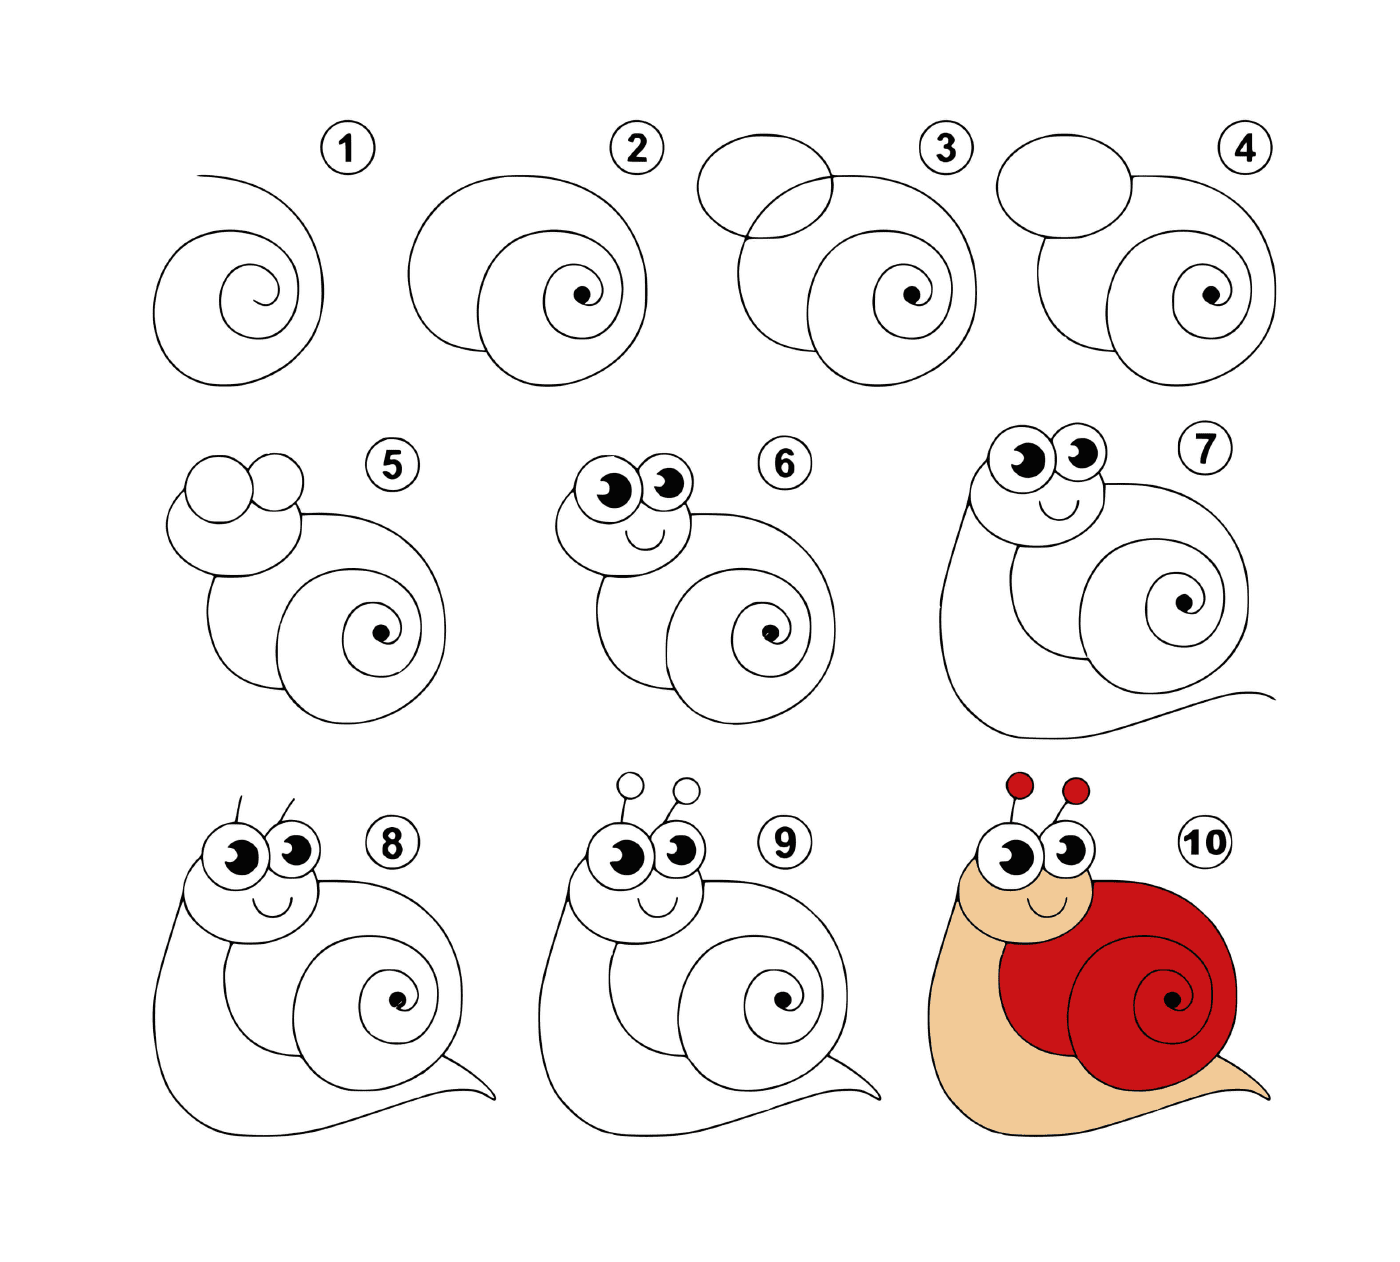  Como desenhar um caracol facilmente 